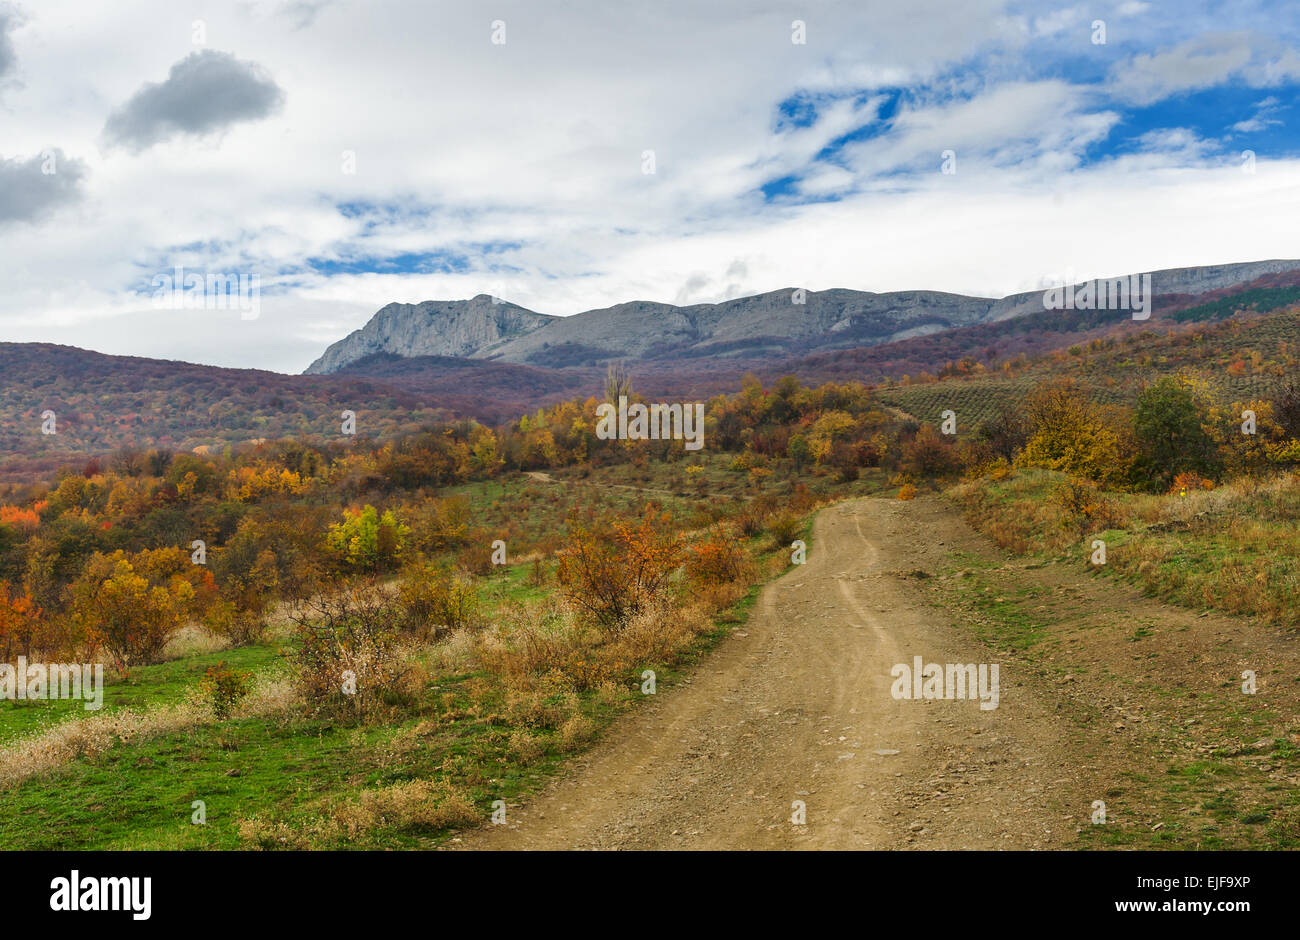 Mountain landscape near Alushta city at fall season - Crimea, Ukraine. Stock Photo